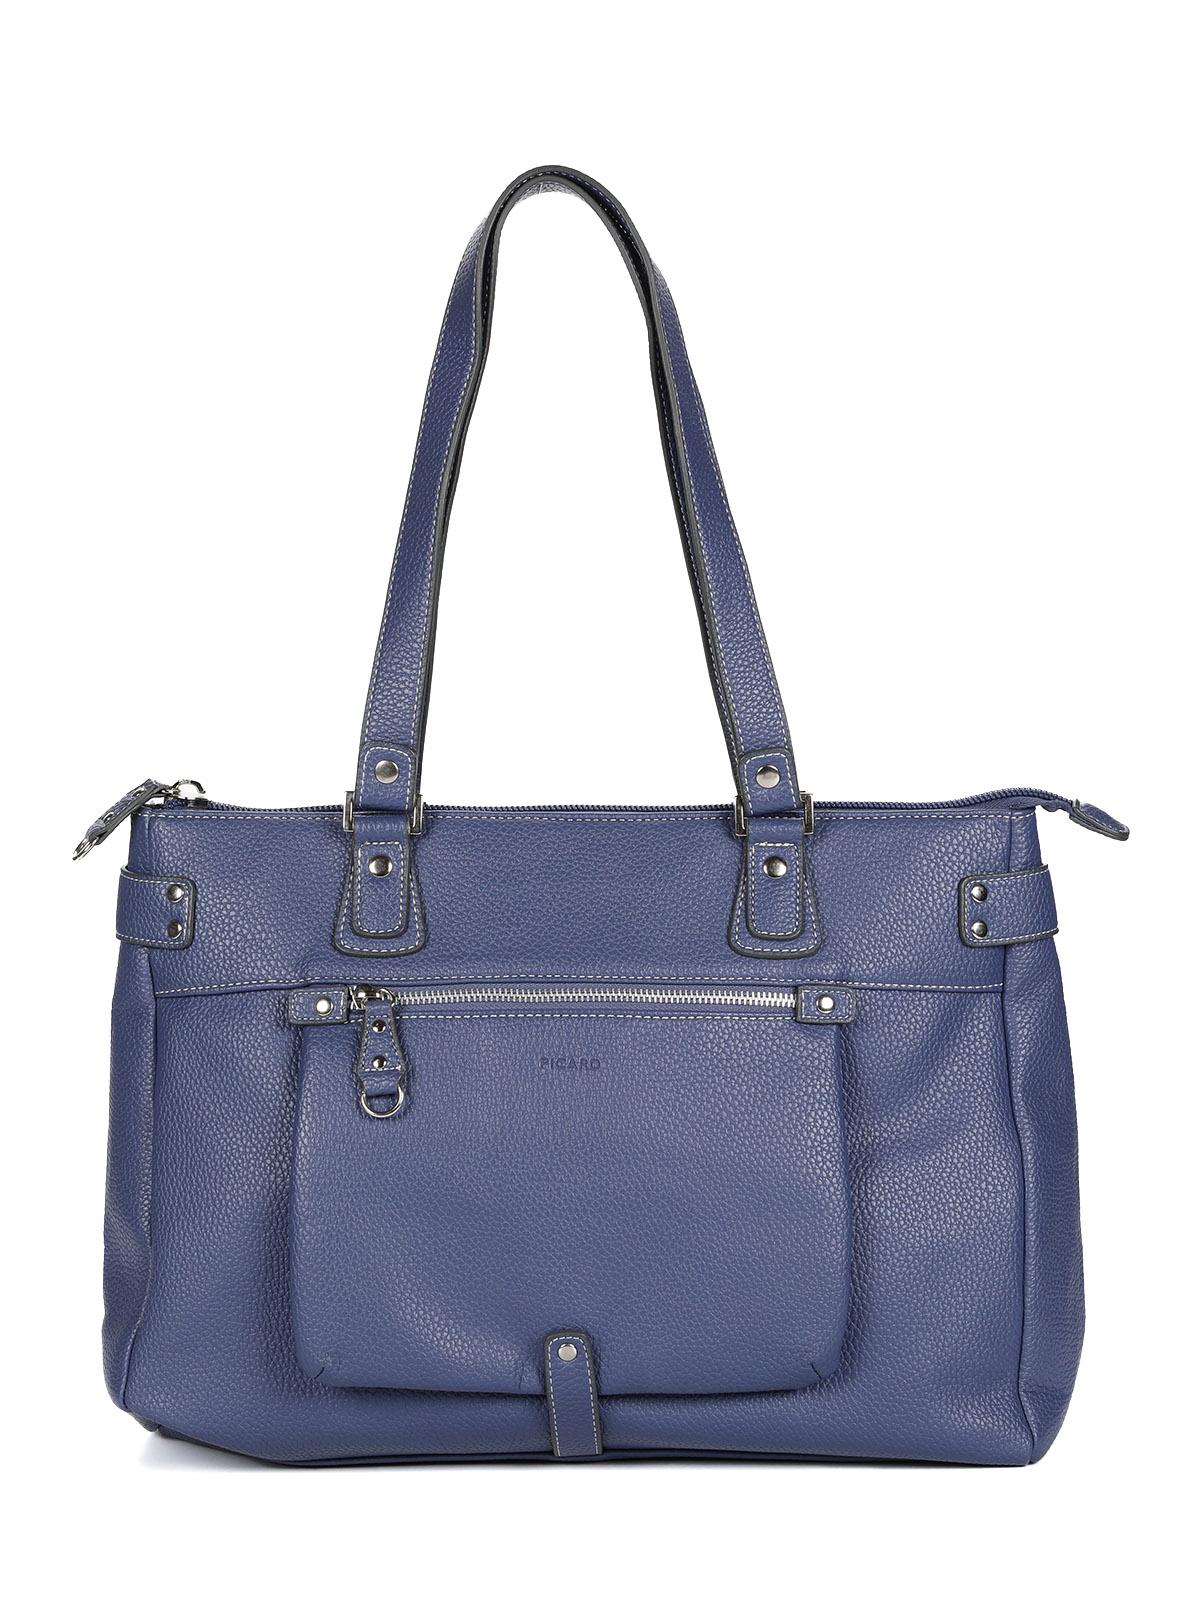 Женская сумка шоппер Picard, синяя